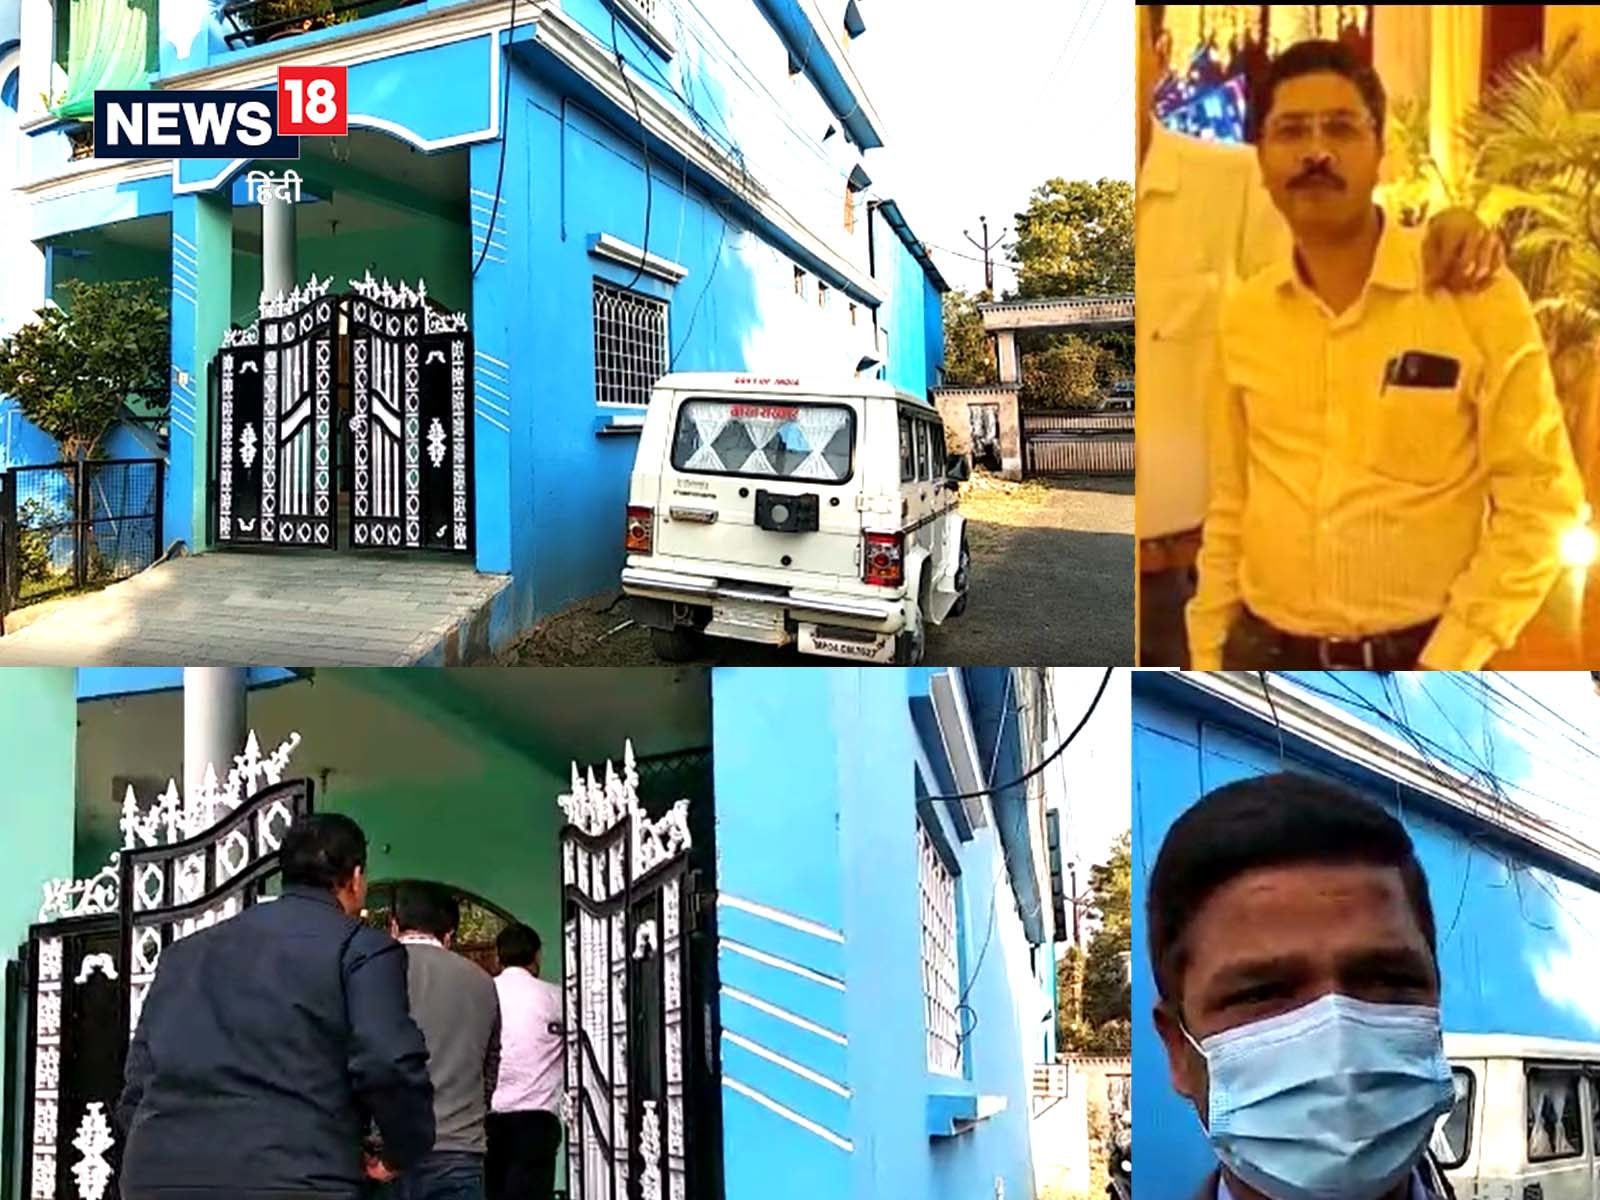 Betul News Today: मध्य प्रदेश के बैतुल में ईओडब्ल्यू ने स्वास्थ्य विभाग के स्टोरकीपर केबी वर्मा के घर मारा छापा.